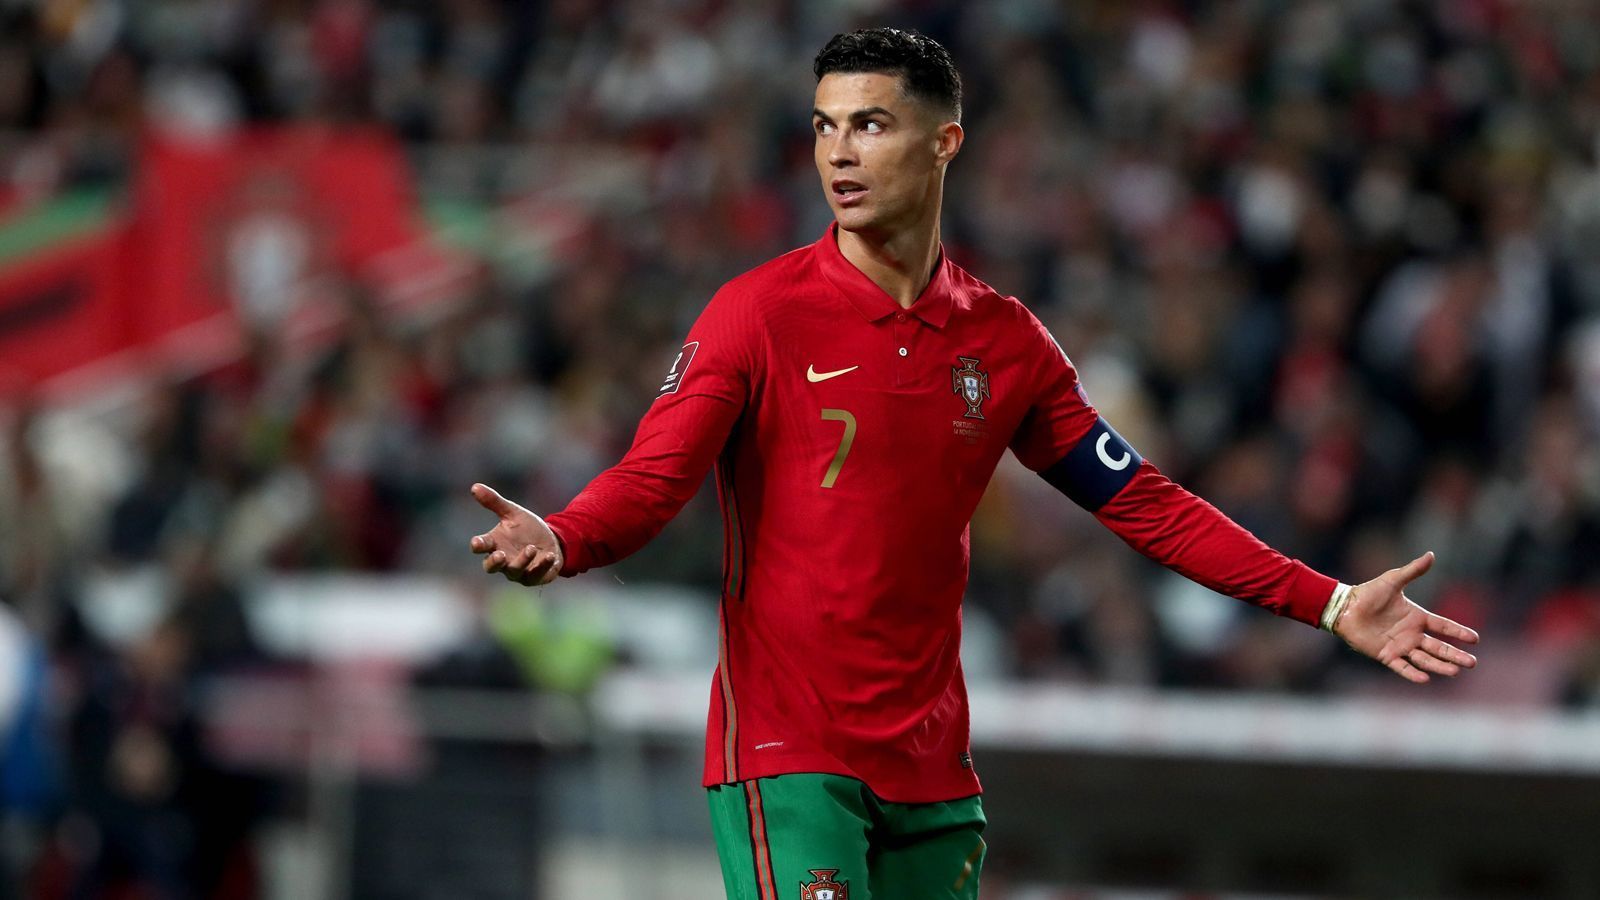 
                <strong>Cristiano Ronaldo (Portugal)</strong><br>
                Klub: Manchester UnitedLänderspiele: 184Tore: 115 Assists: 40Gegner Halbfinale/Finale: Türkei/Sieger Italien - Nordmazedonien
              